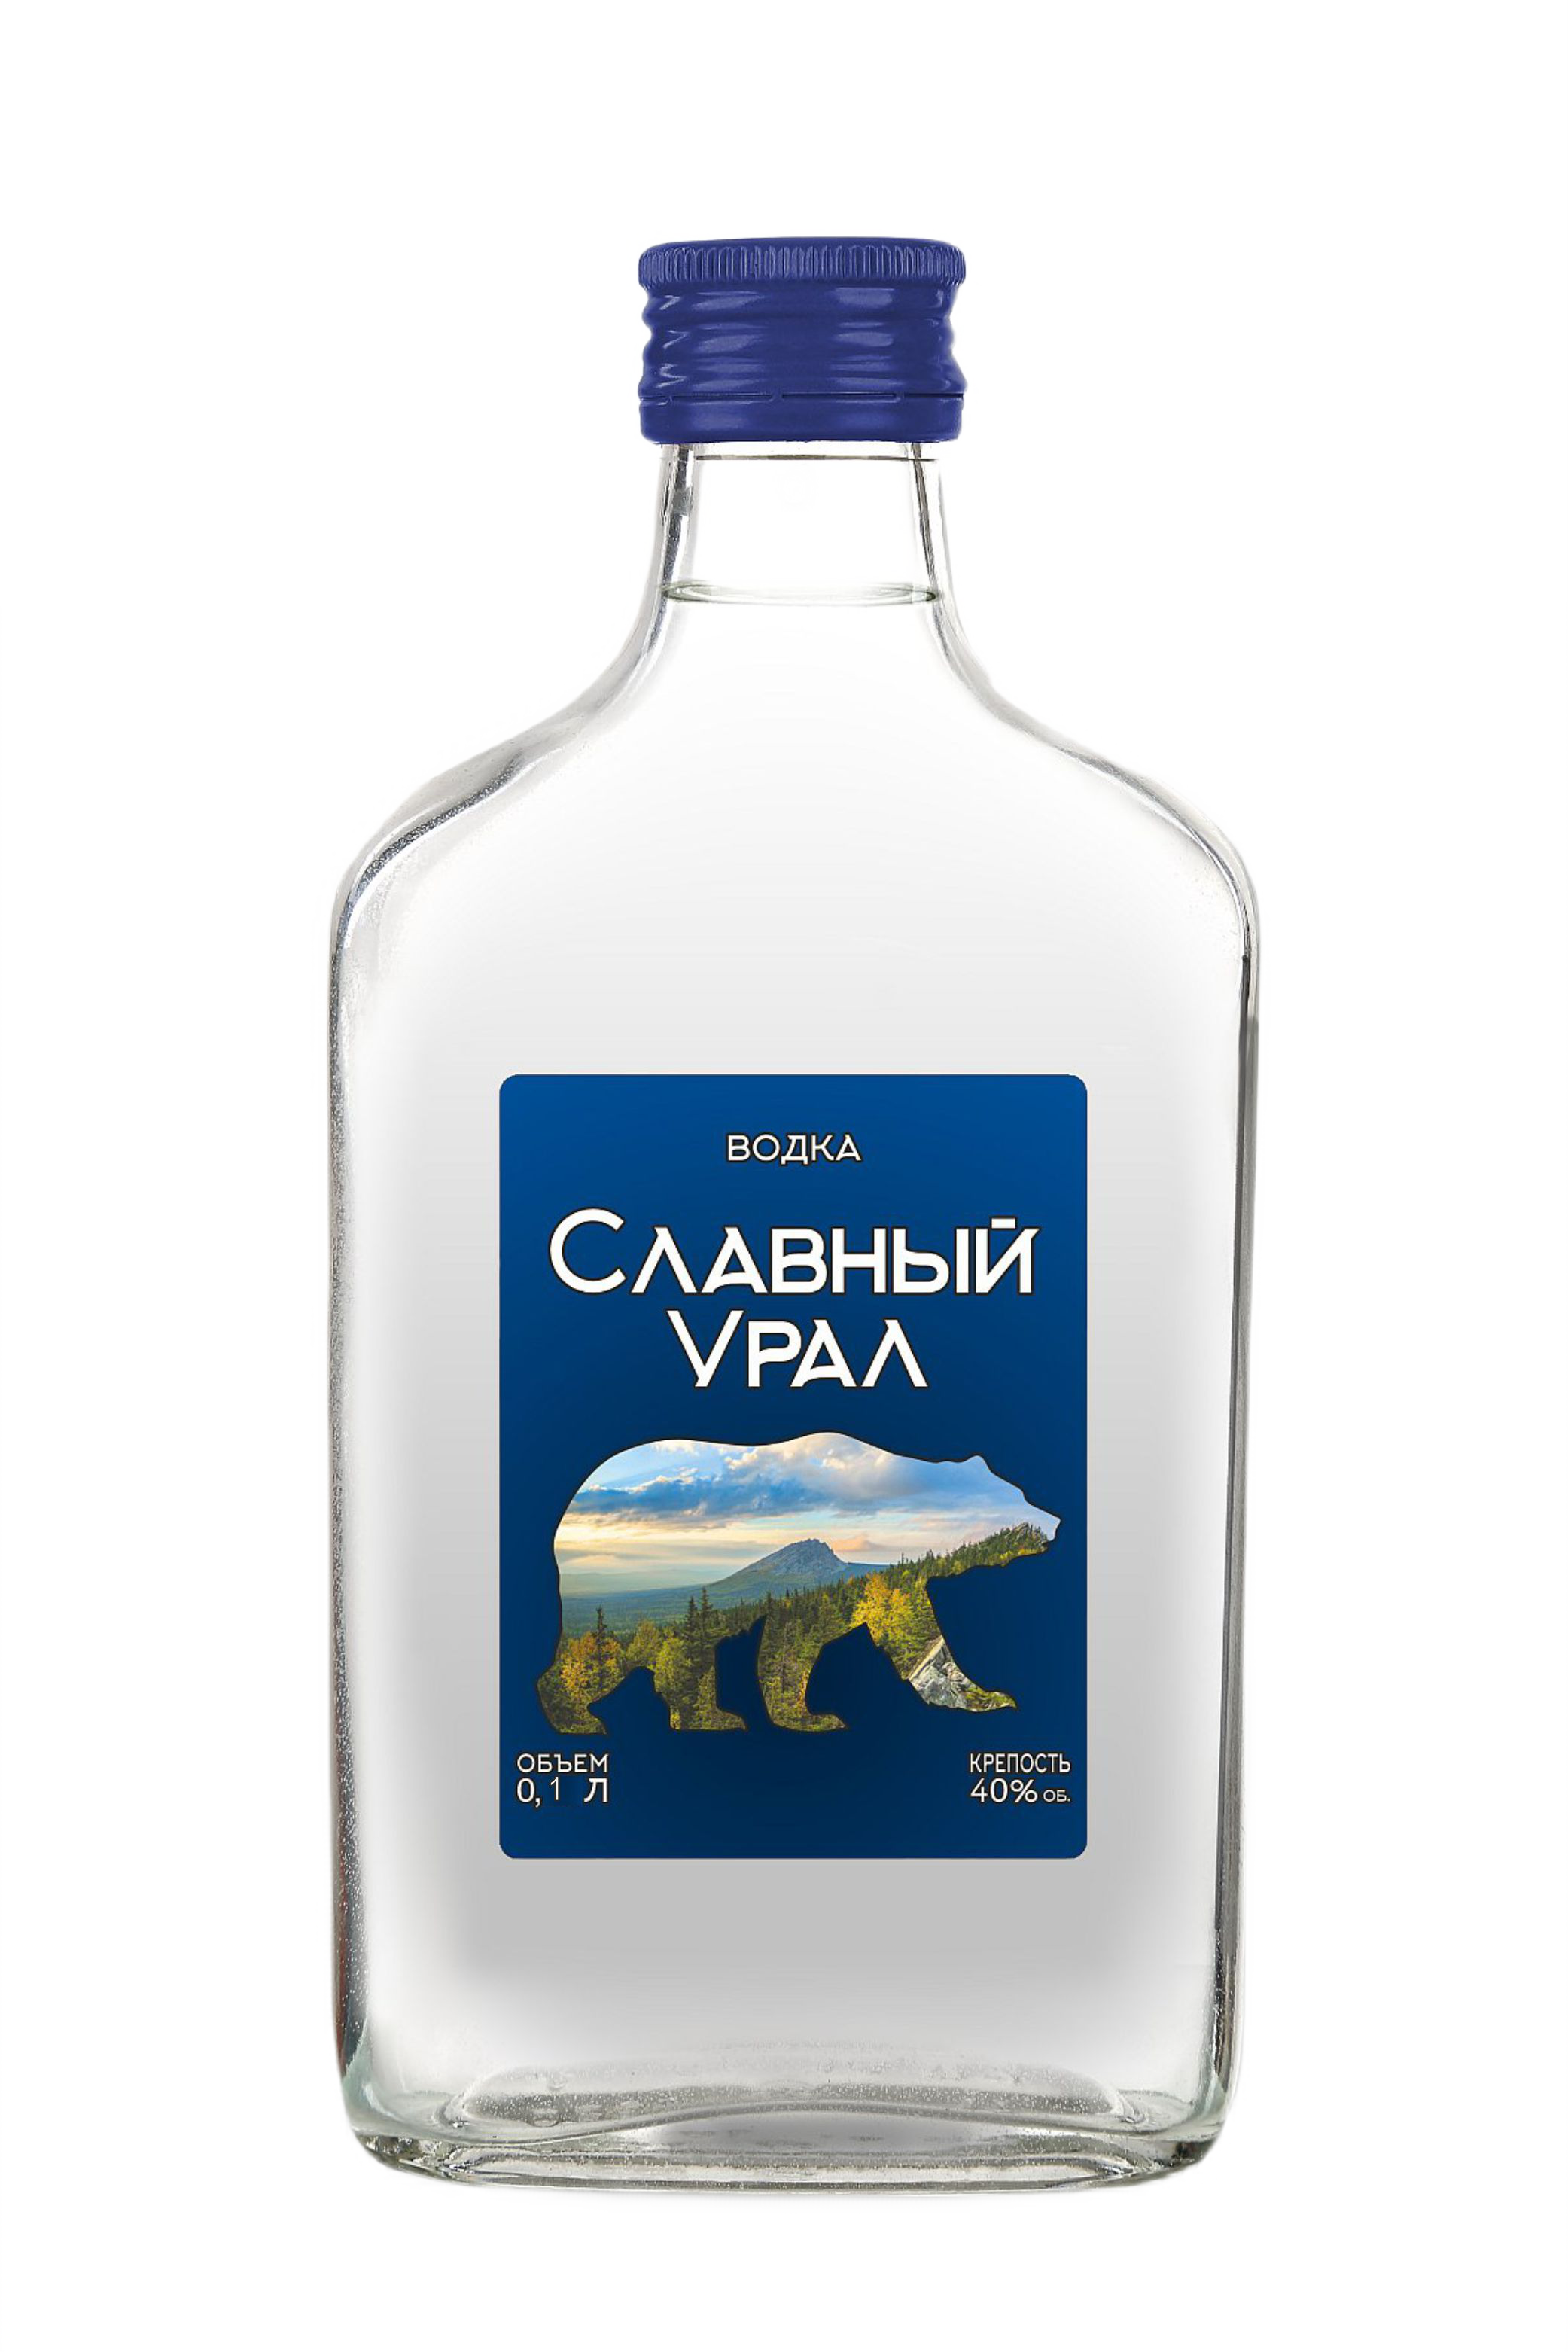 Slavniy Ural - 0.1 L : Slavniy Ural